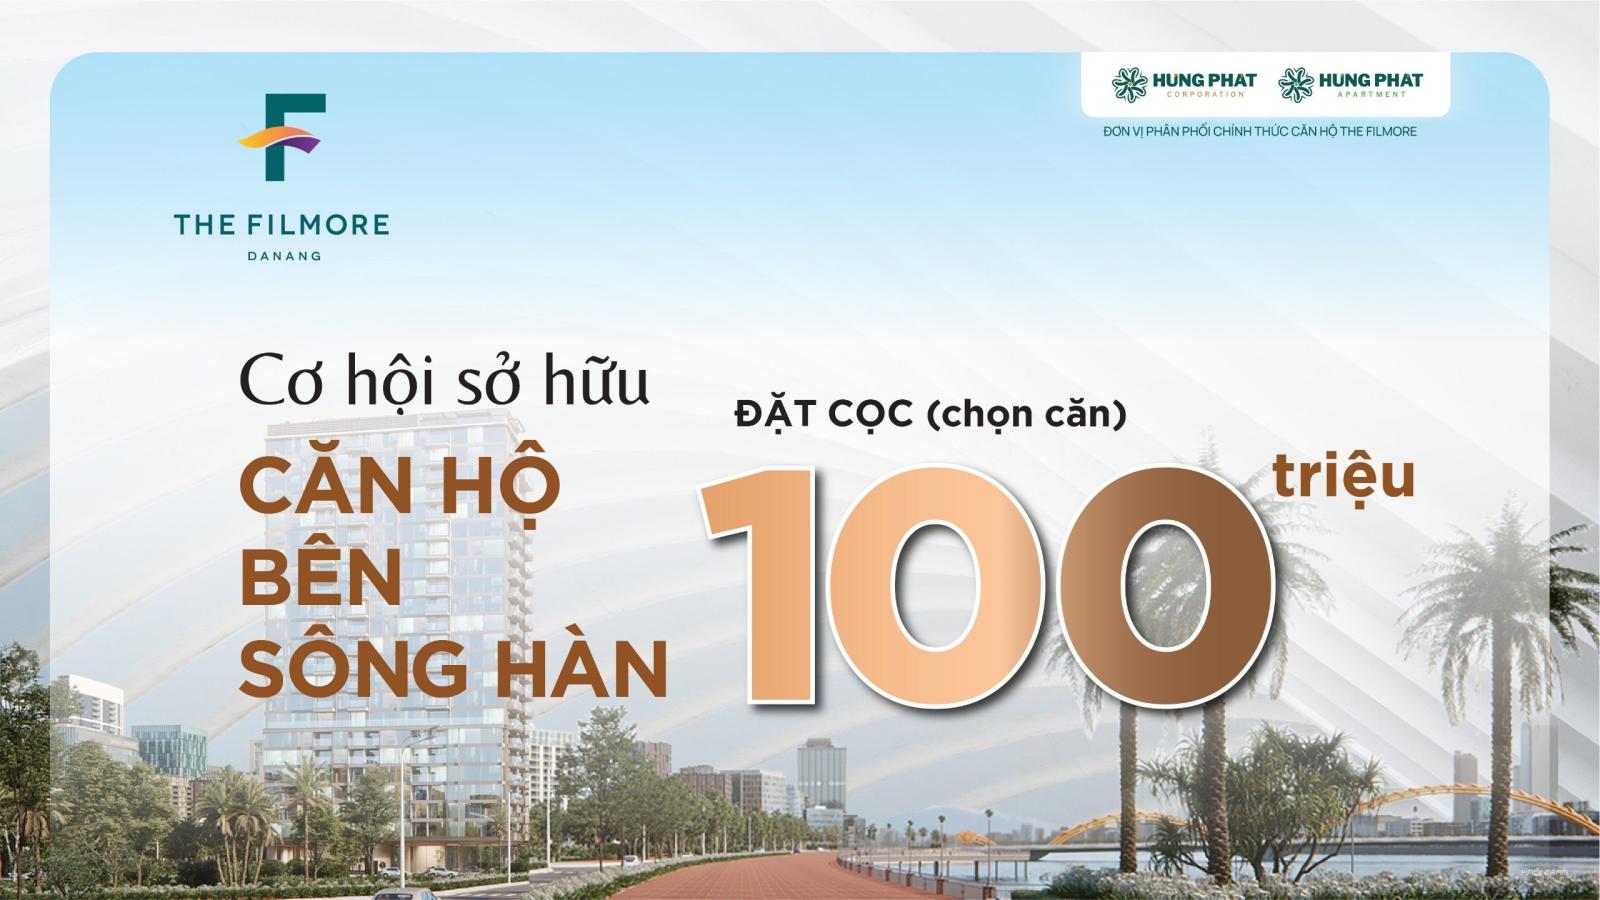 Bán căn hộ đẳng cấp nhất Đà Nẵng bên bờ sông Hàn Filmore 2PN CH1104 72,1m2 - 8,01 